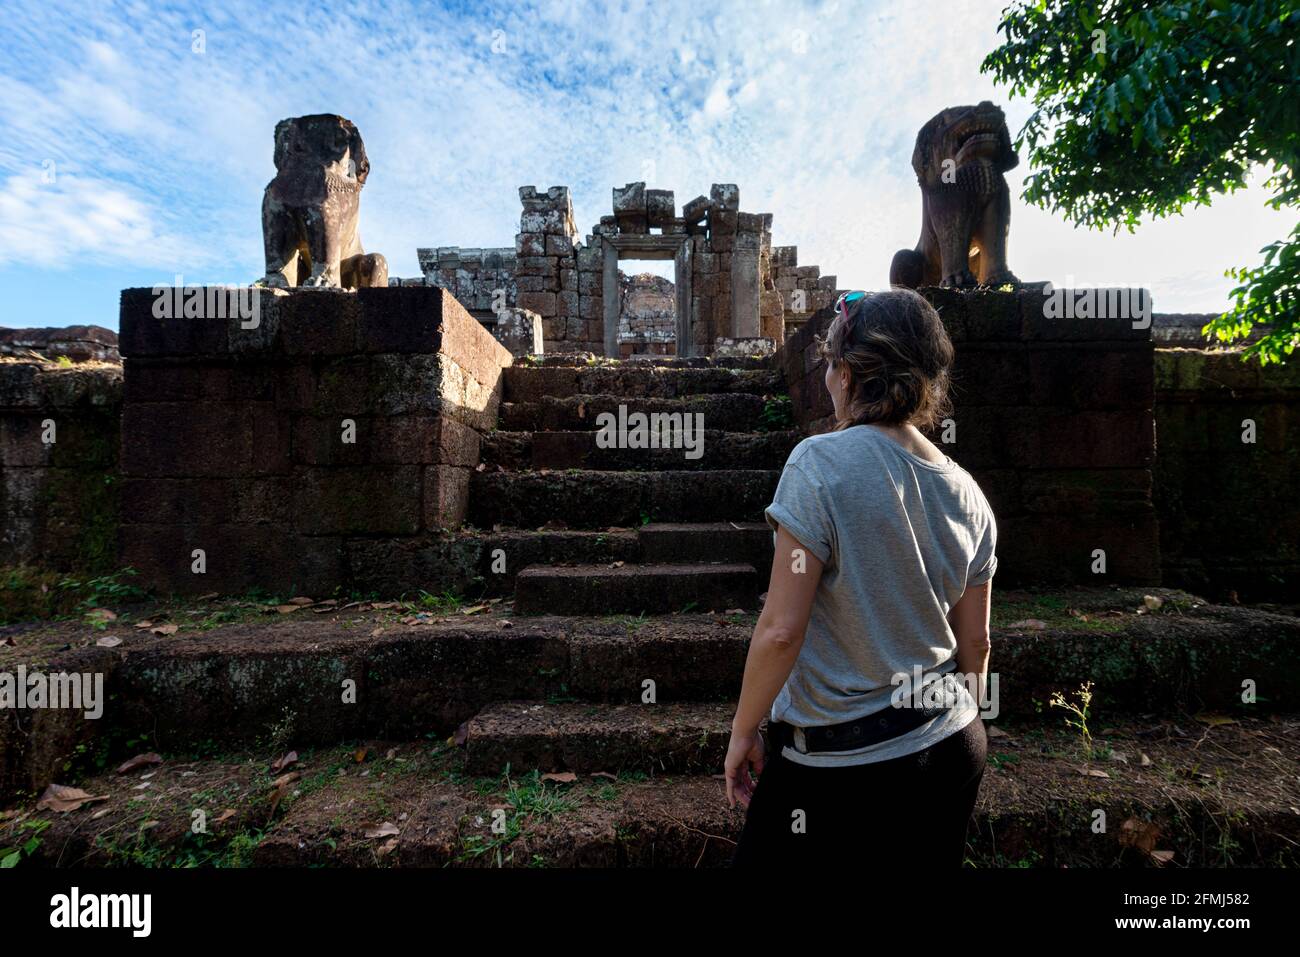 Vue arrière d'une touriste féminine anonyme contemplant un animal en pierre vieilli Statues et escaliers à Angkor Wat du Cambodge Banque D'Images